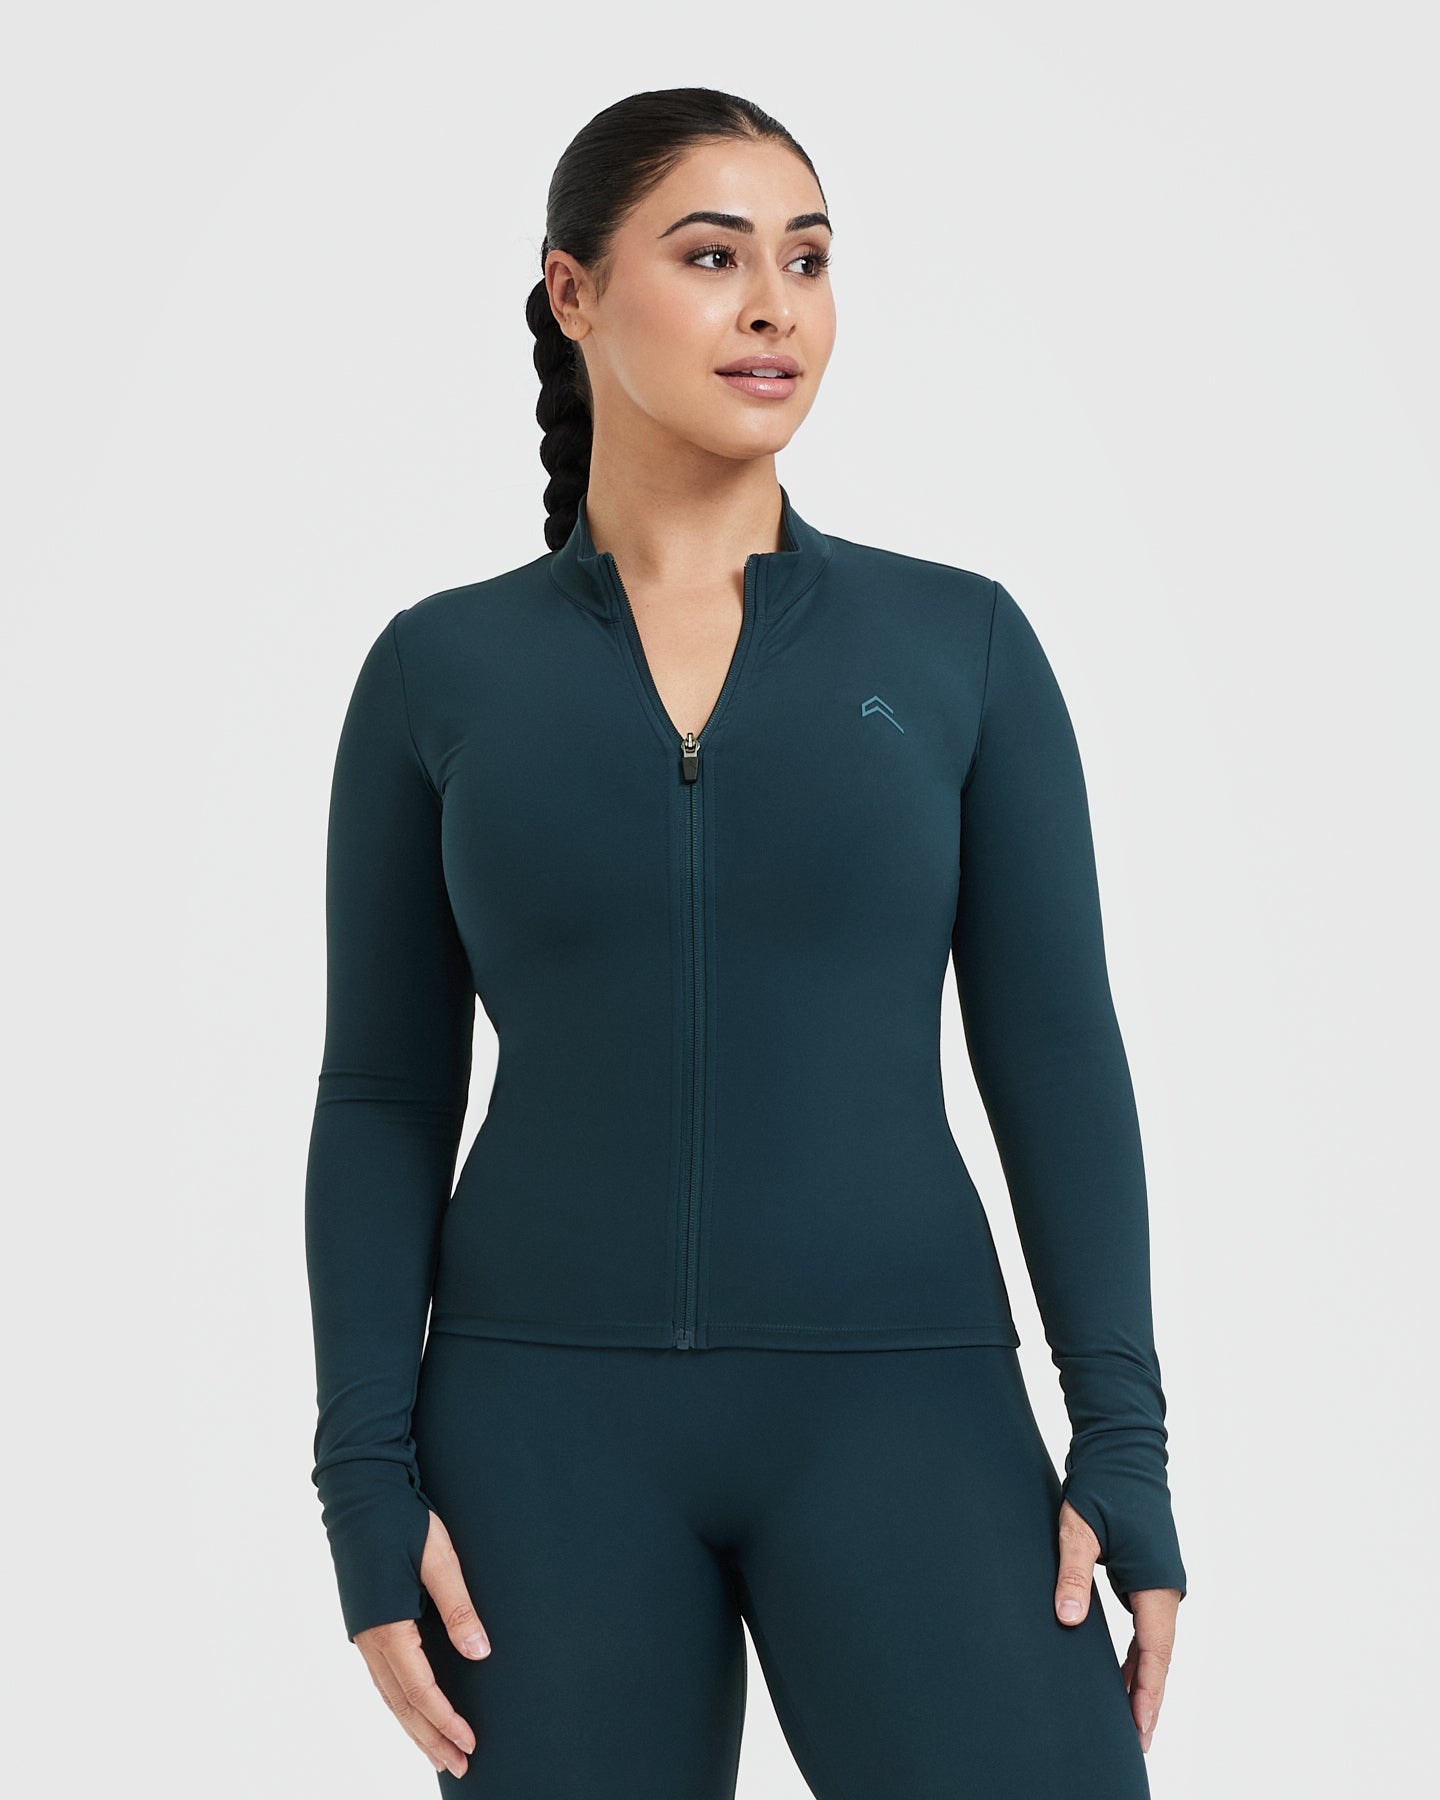 Lulu Define Women Jacket With Logo Yoga Wear Long Sleeve Full